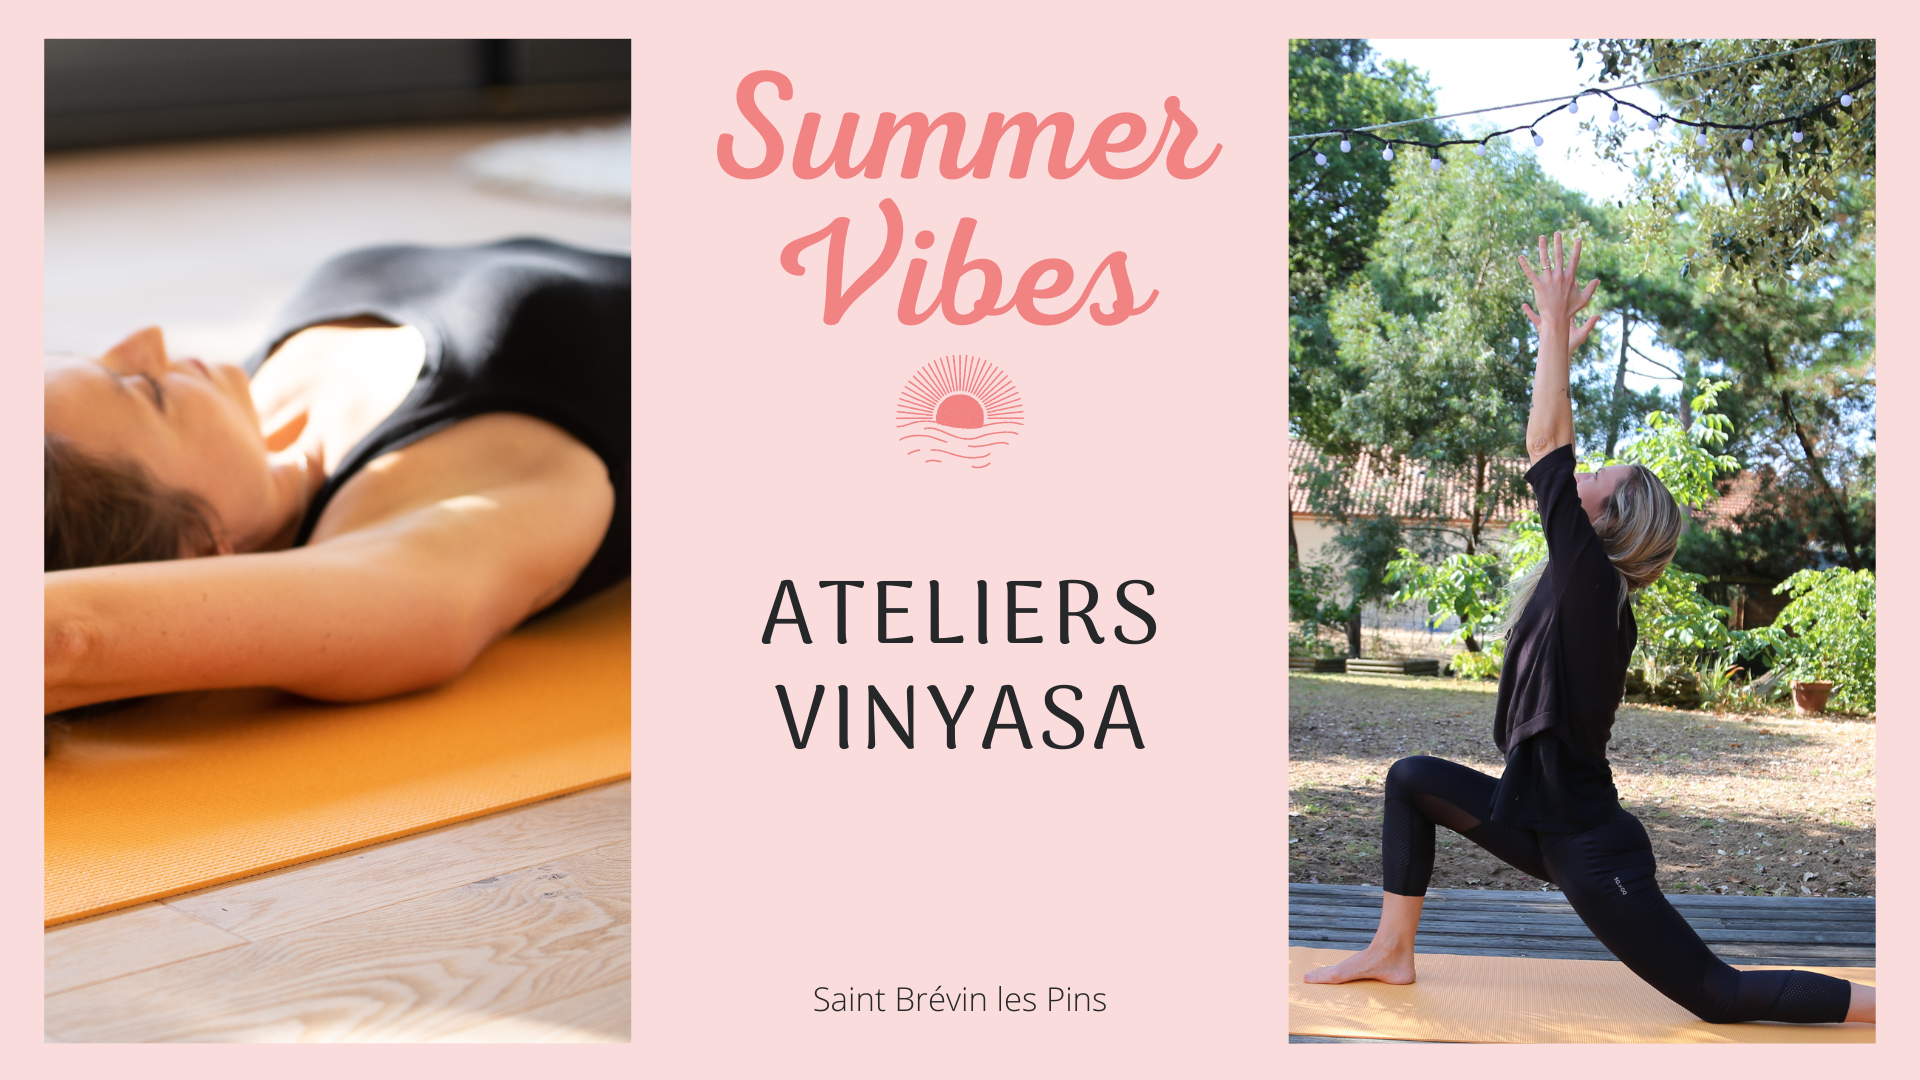 Atelier yoga Vinyasa Saint Brévin